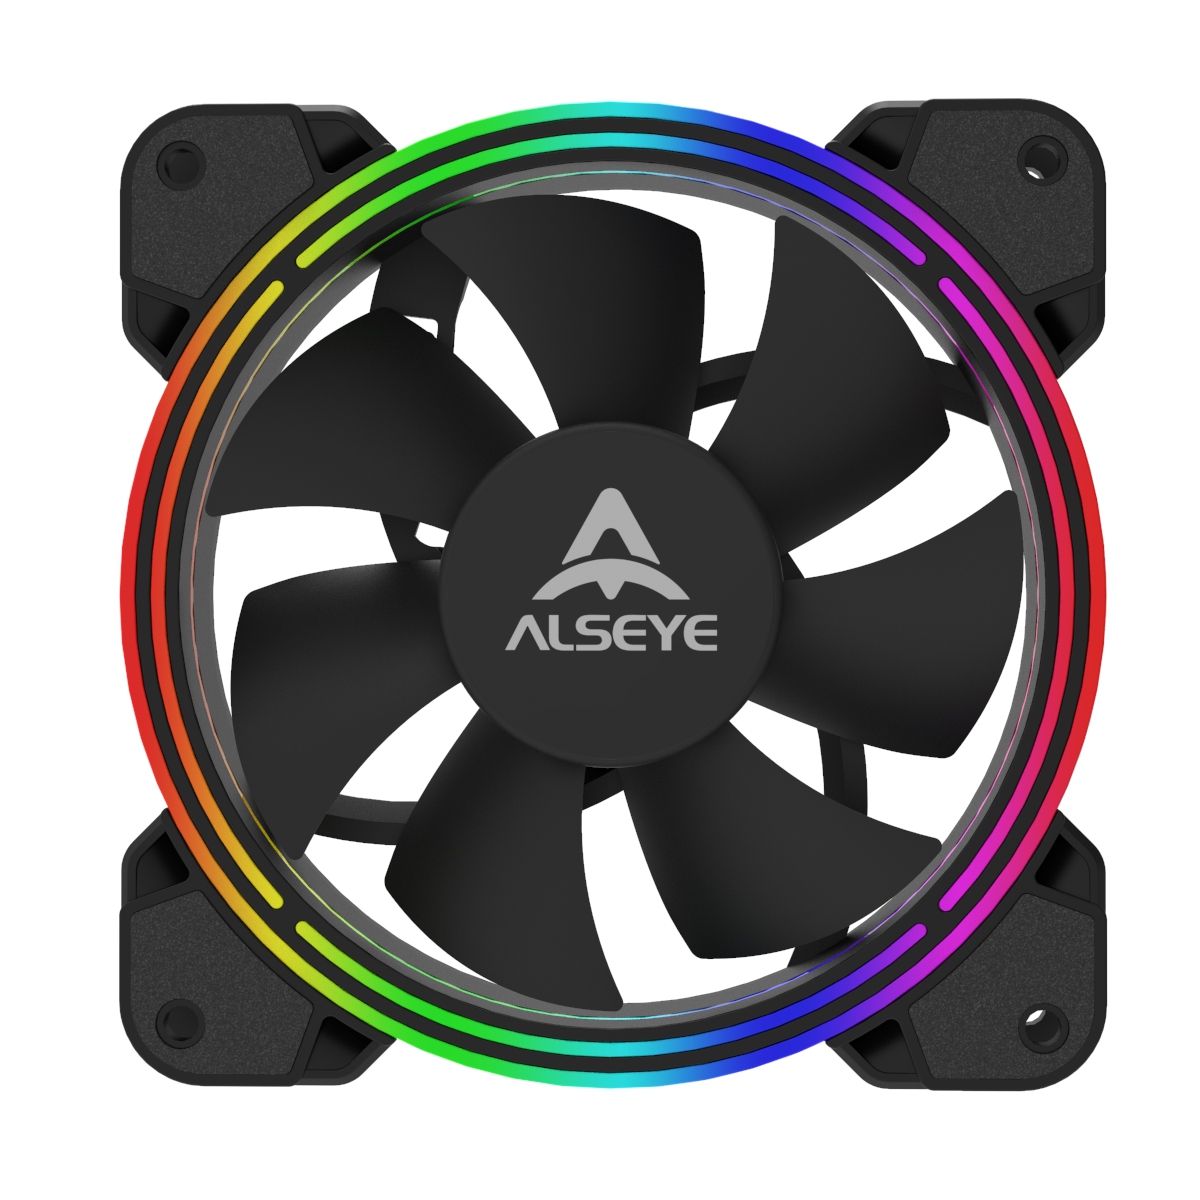 Вентилятор Alseye HALO 4.0, 120мм, 2000rpm, 30 дБ, 4-pin PWM, 1шт, RGB (AS-HALO-4.0-RGB) б/у, с внутреннего использования, следы монтажа, полный комплект